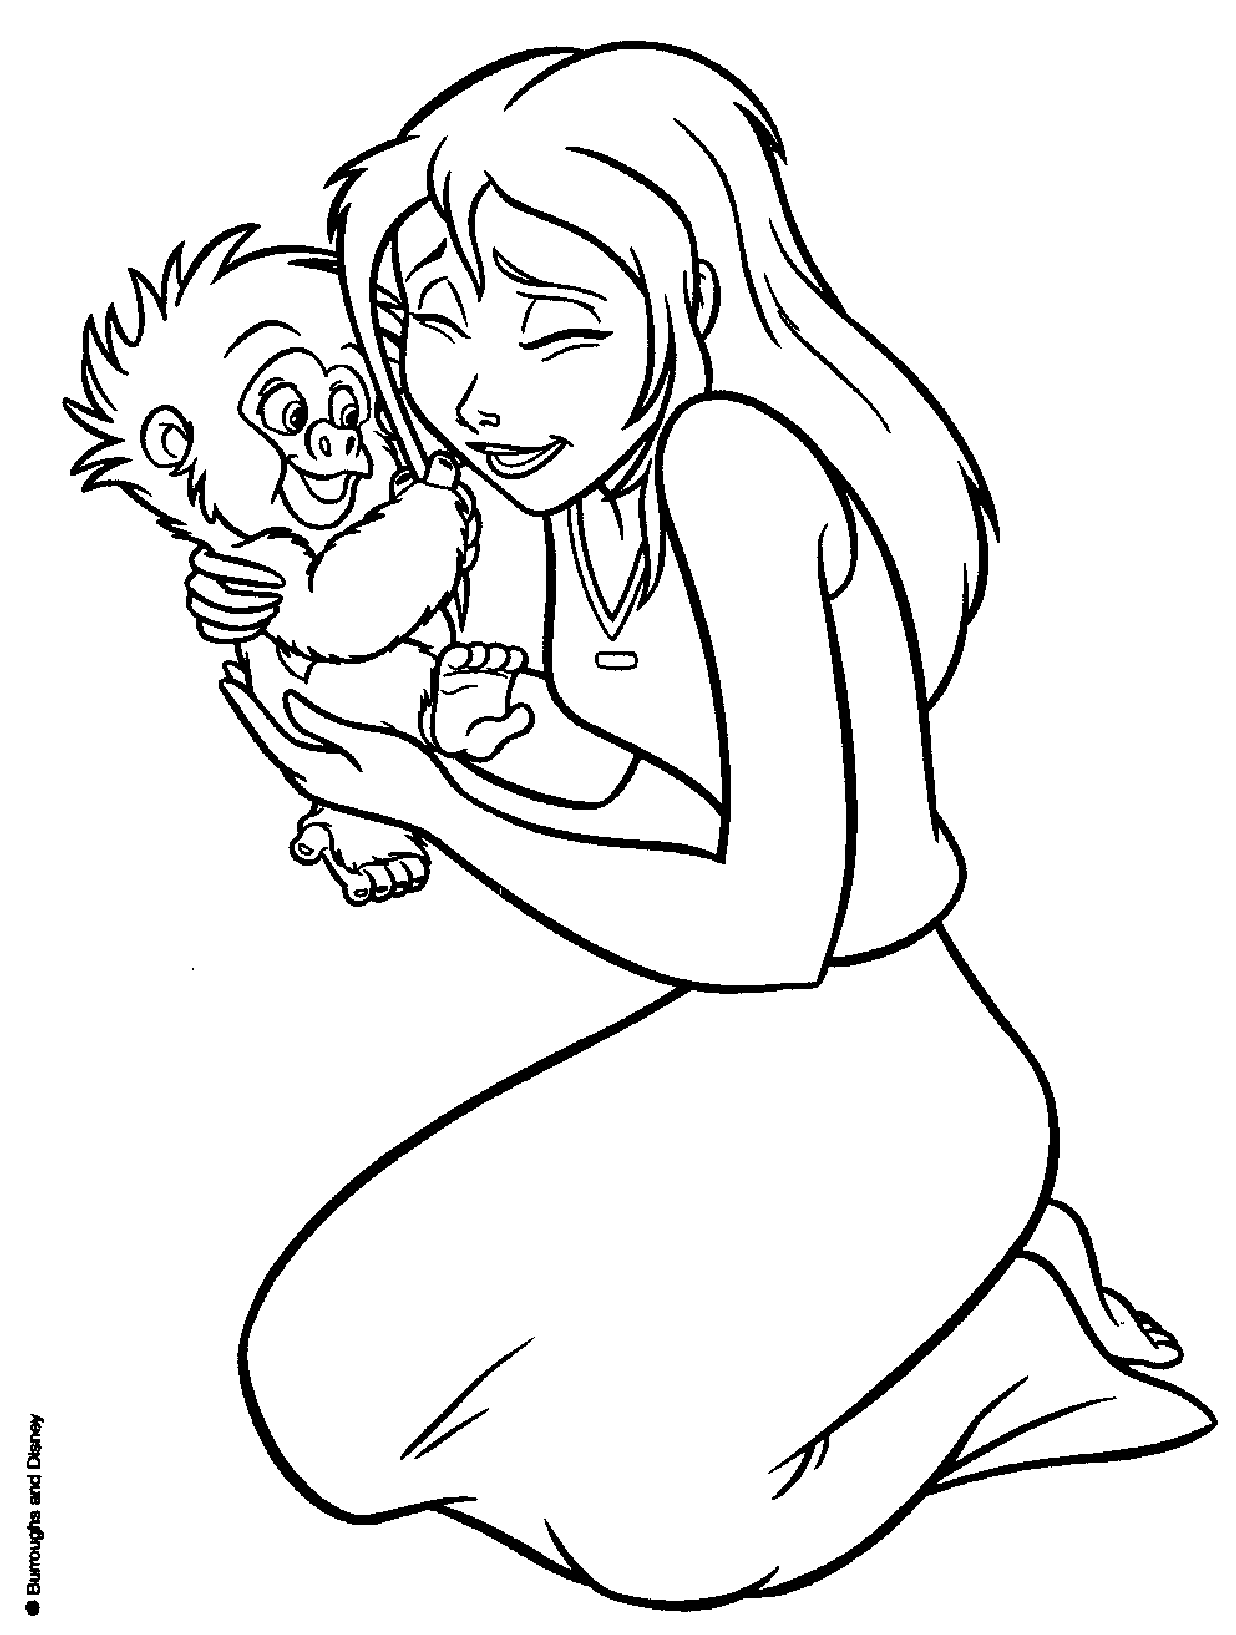 Jane con un bebé mono